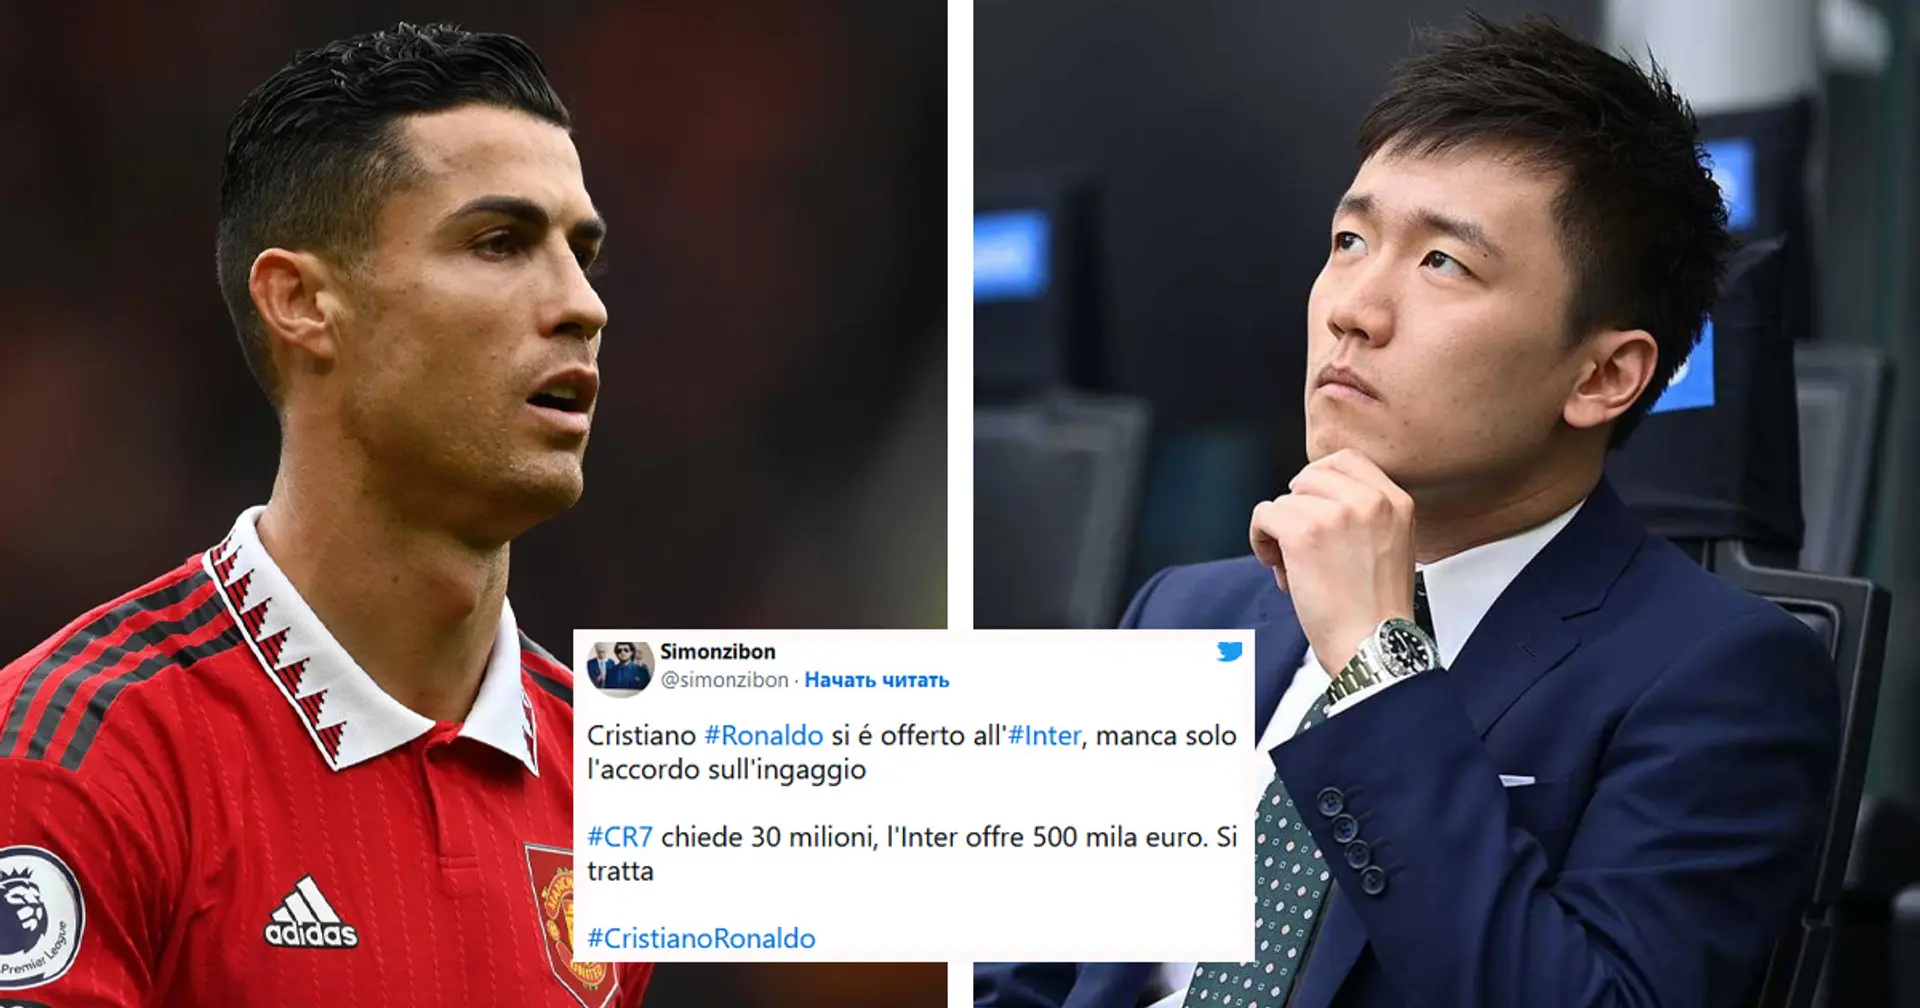 "Arriva per comprarsi l'Inter?!": i tifosi approfittano degli ultimi rumors su CR7 per attaccare Zhang